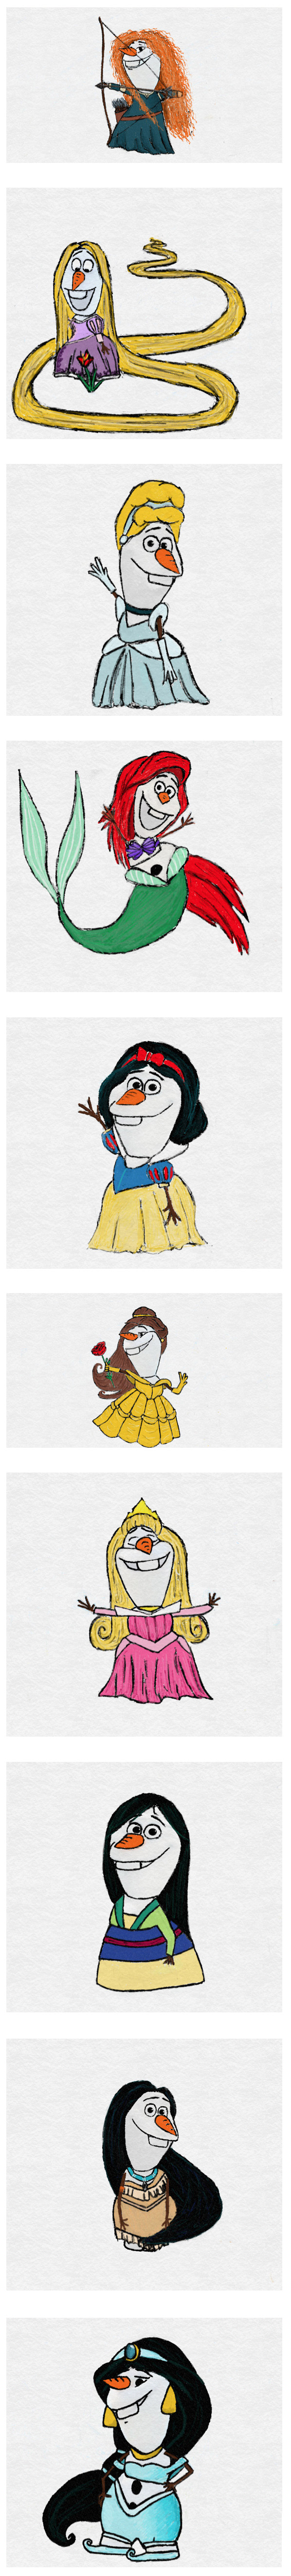 Olaf como princesas de Disney